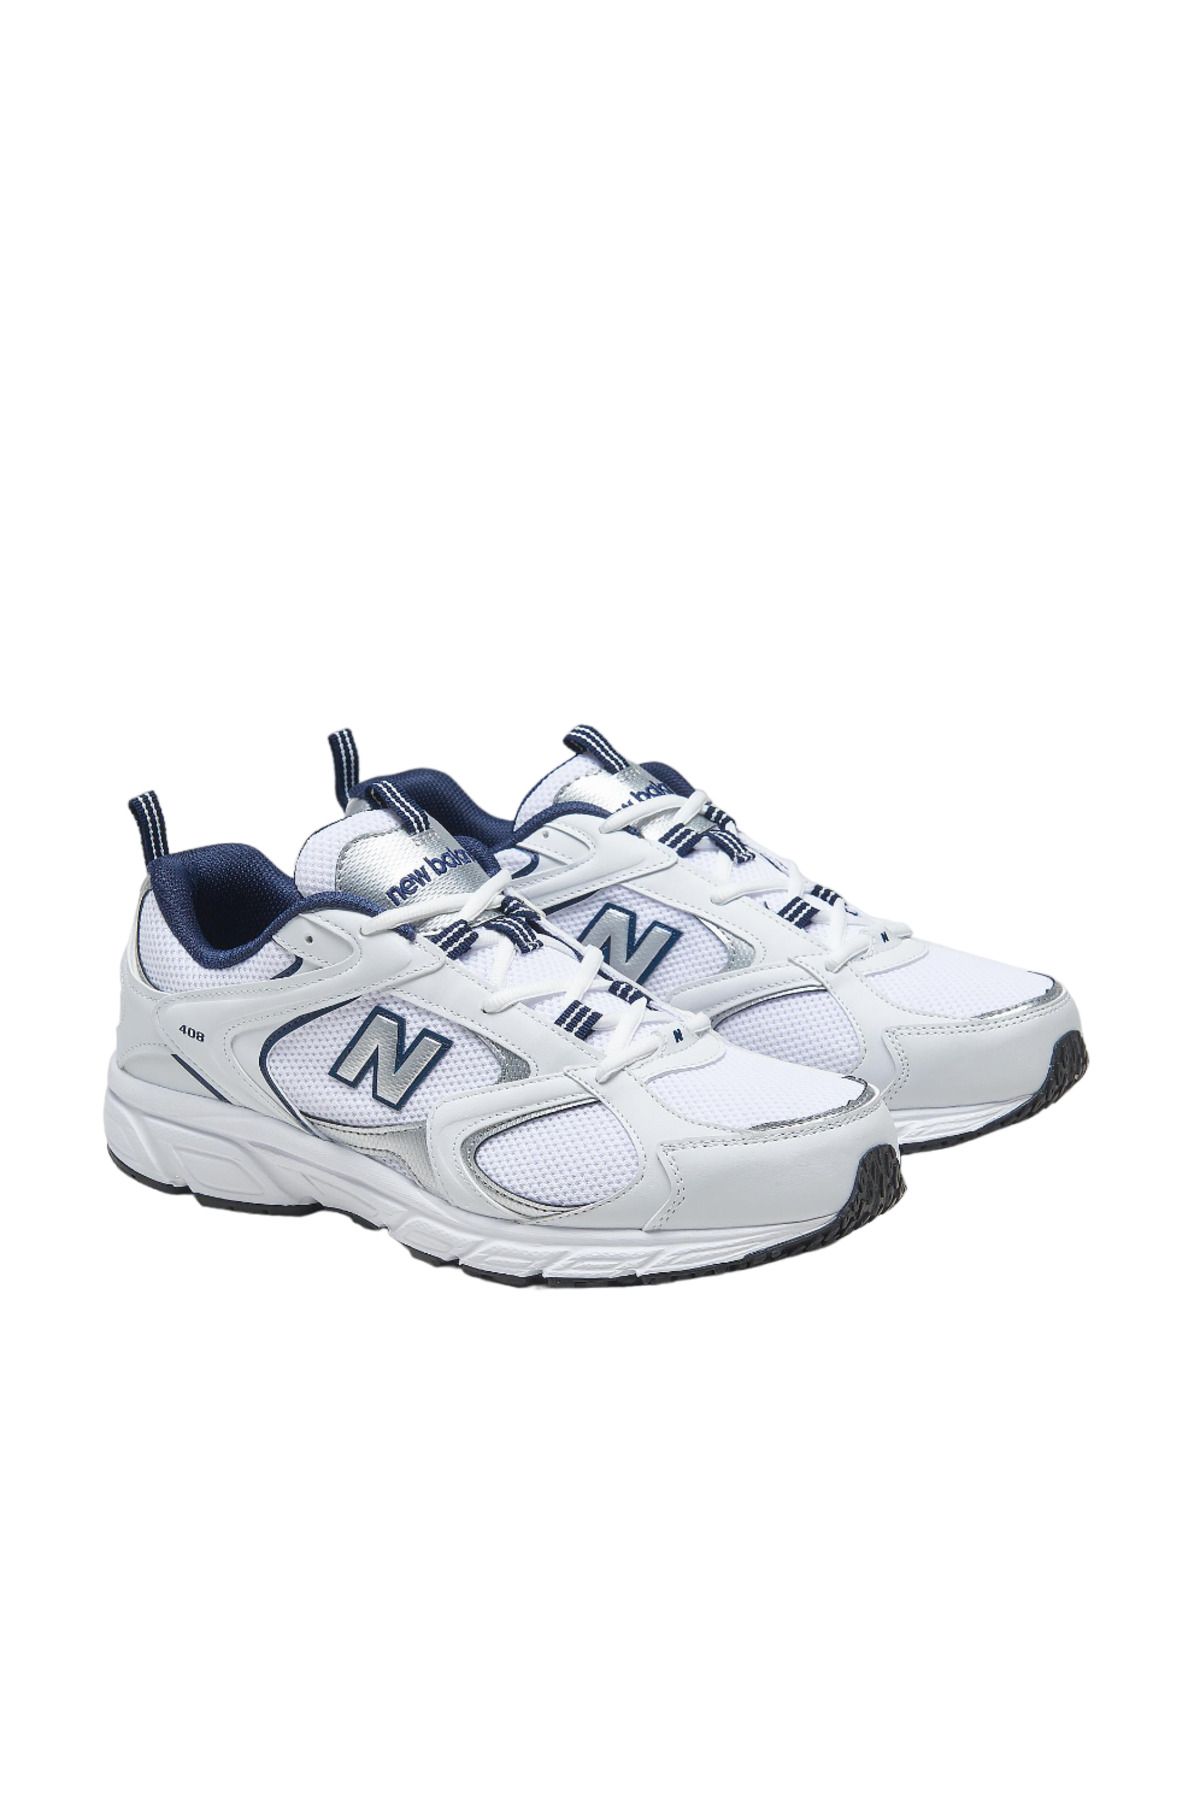 New Balance Lifestyle Ml408 Unisex Beyaz Sneaker Spor Ayakkabı